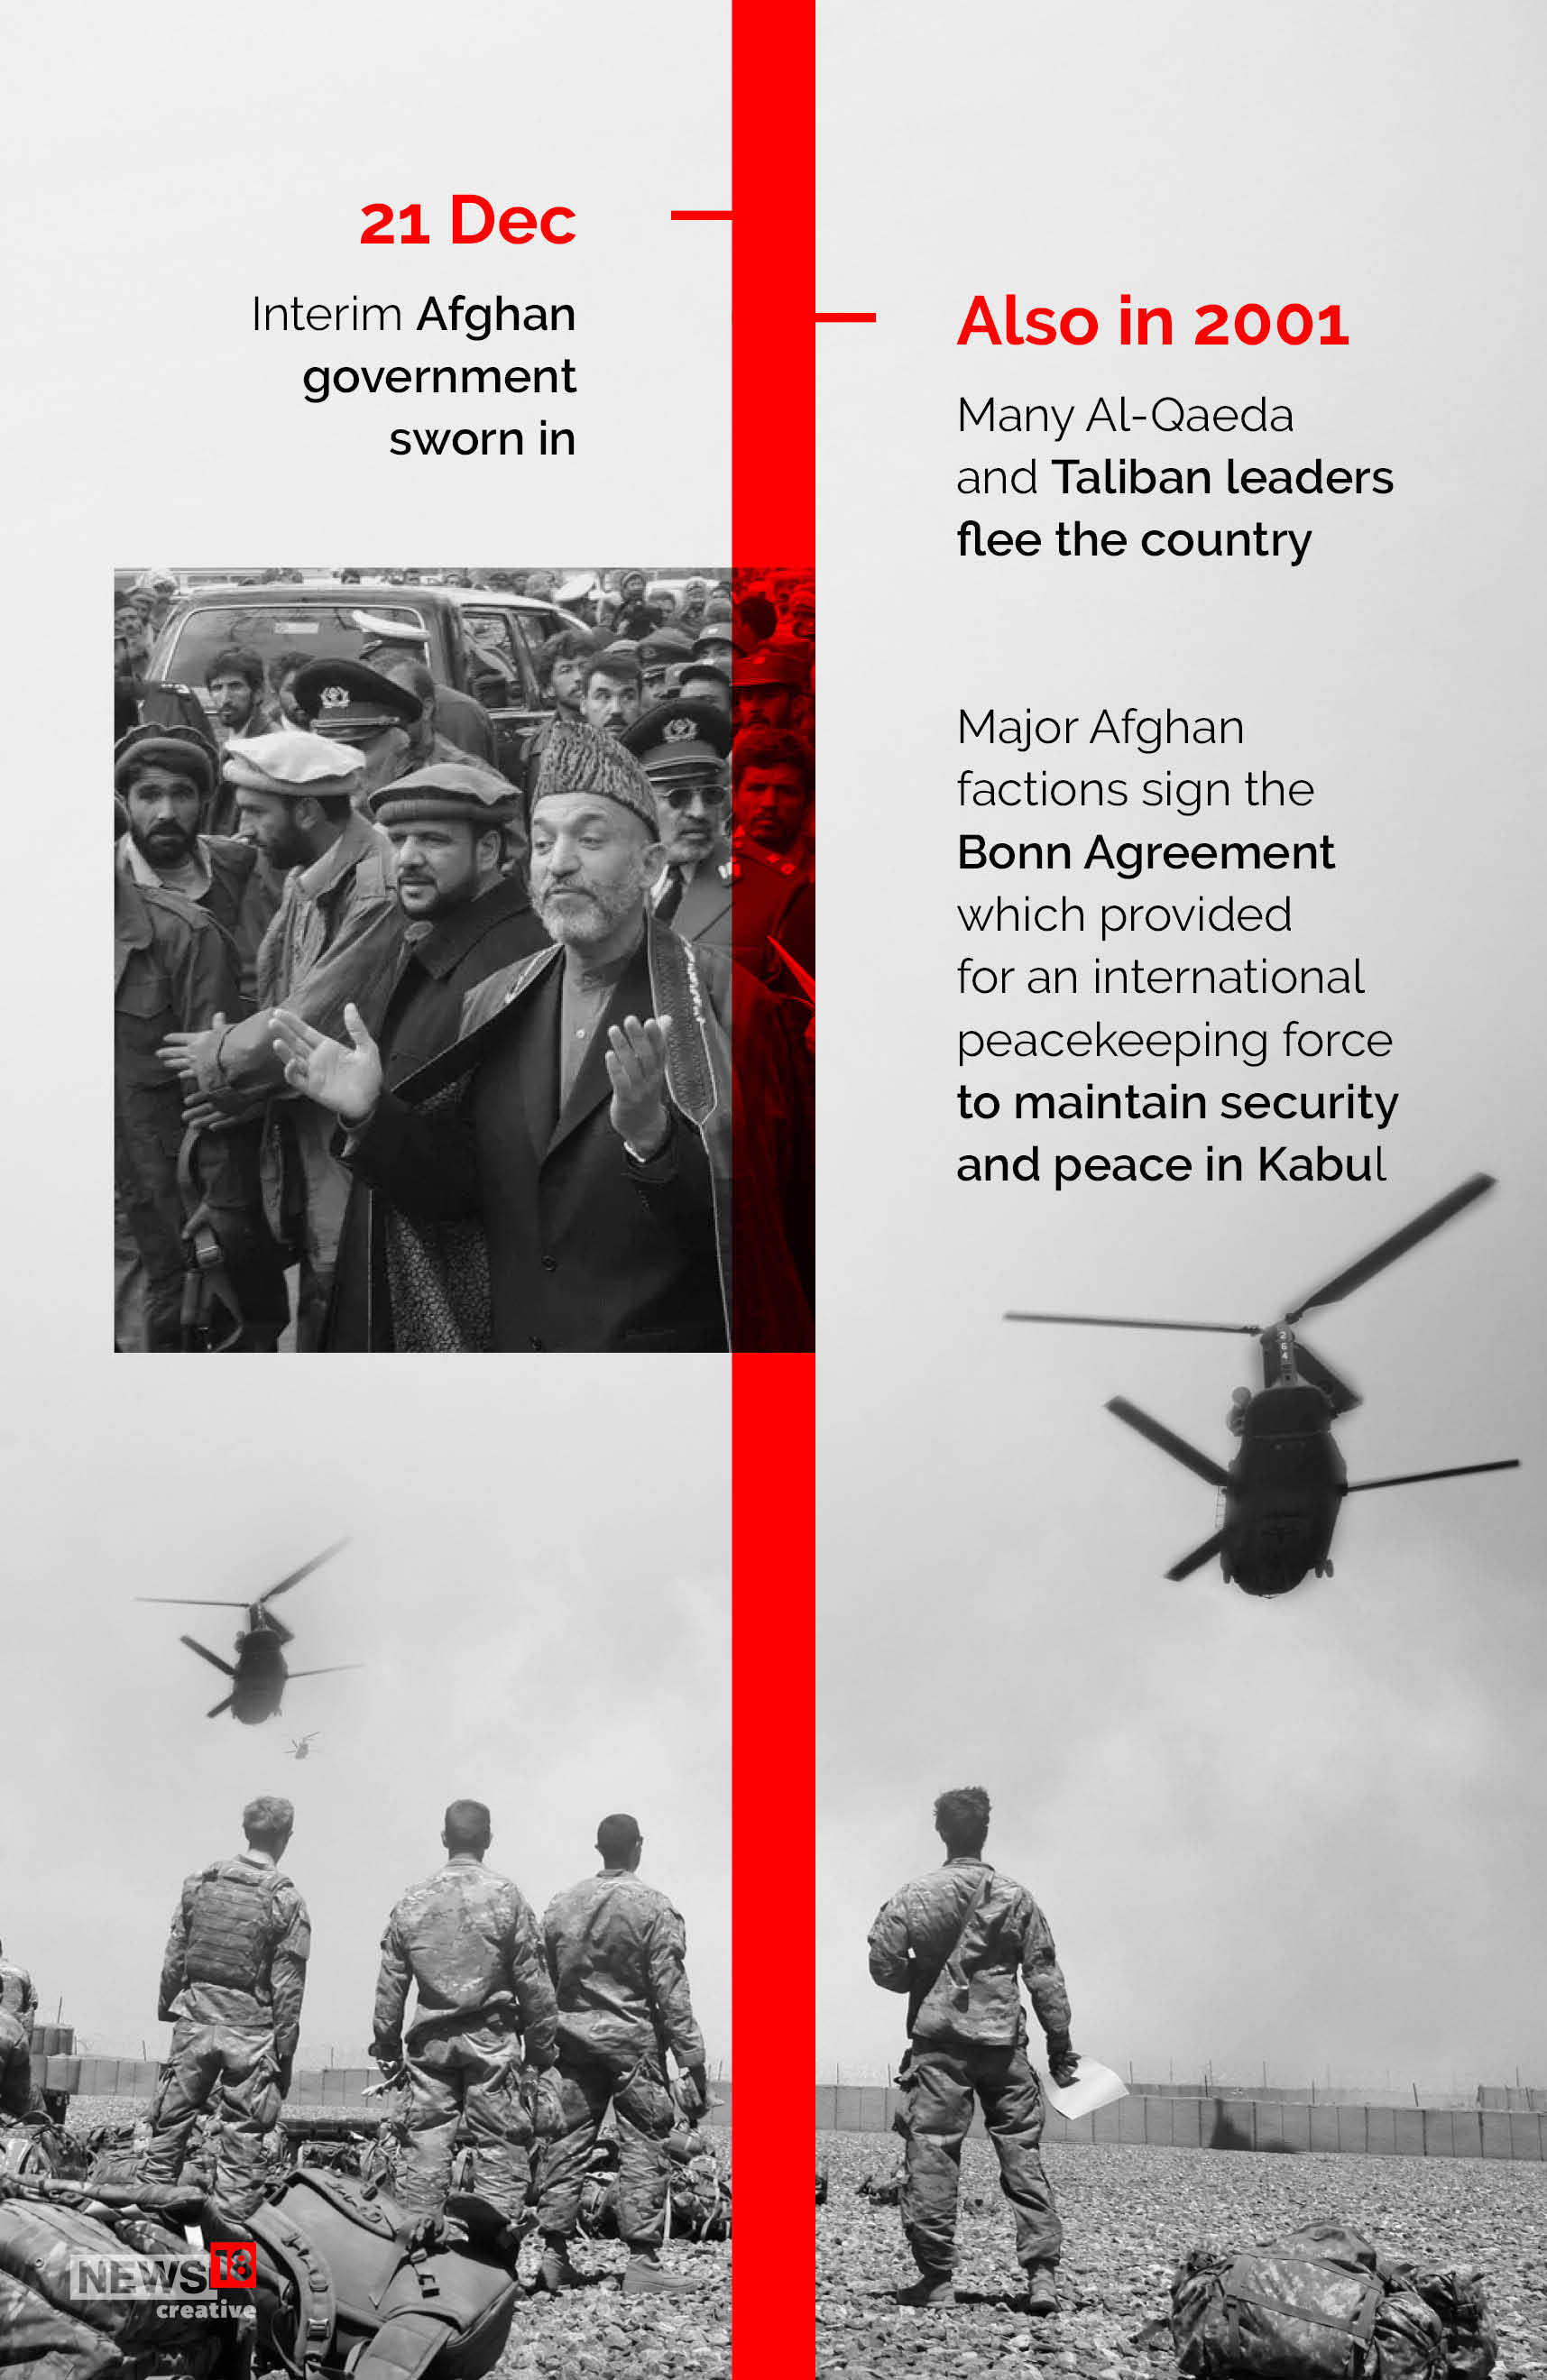 Timeline: America's longest war ends as US leaves Afghanistan